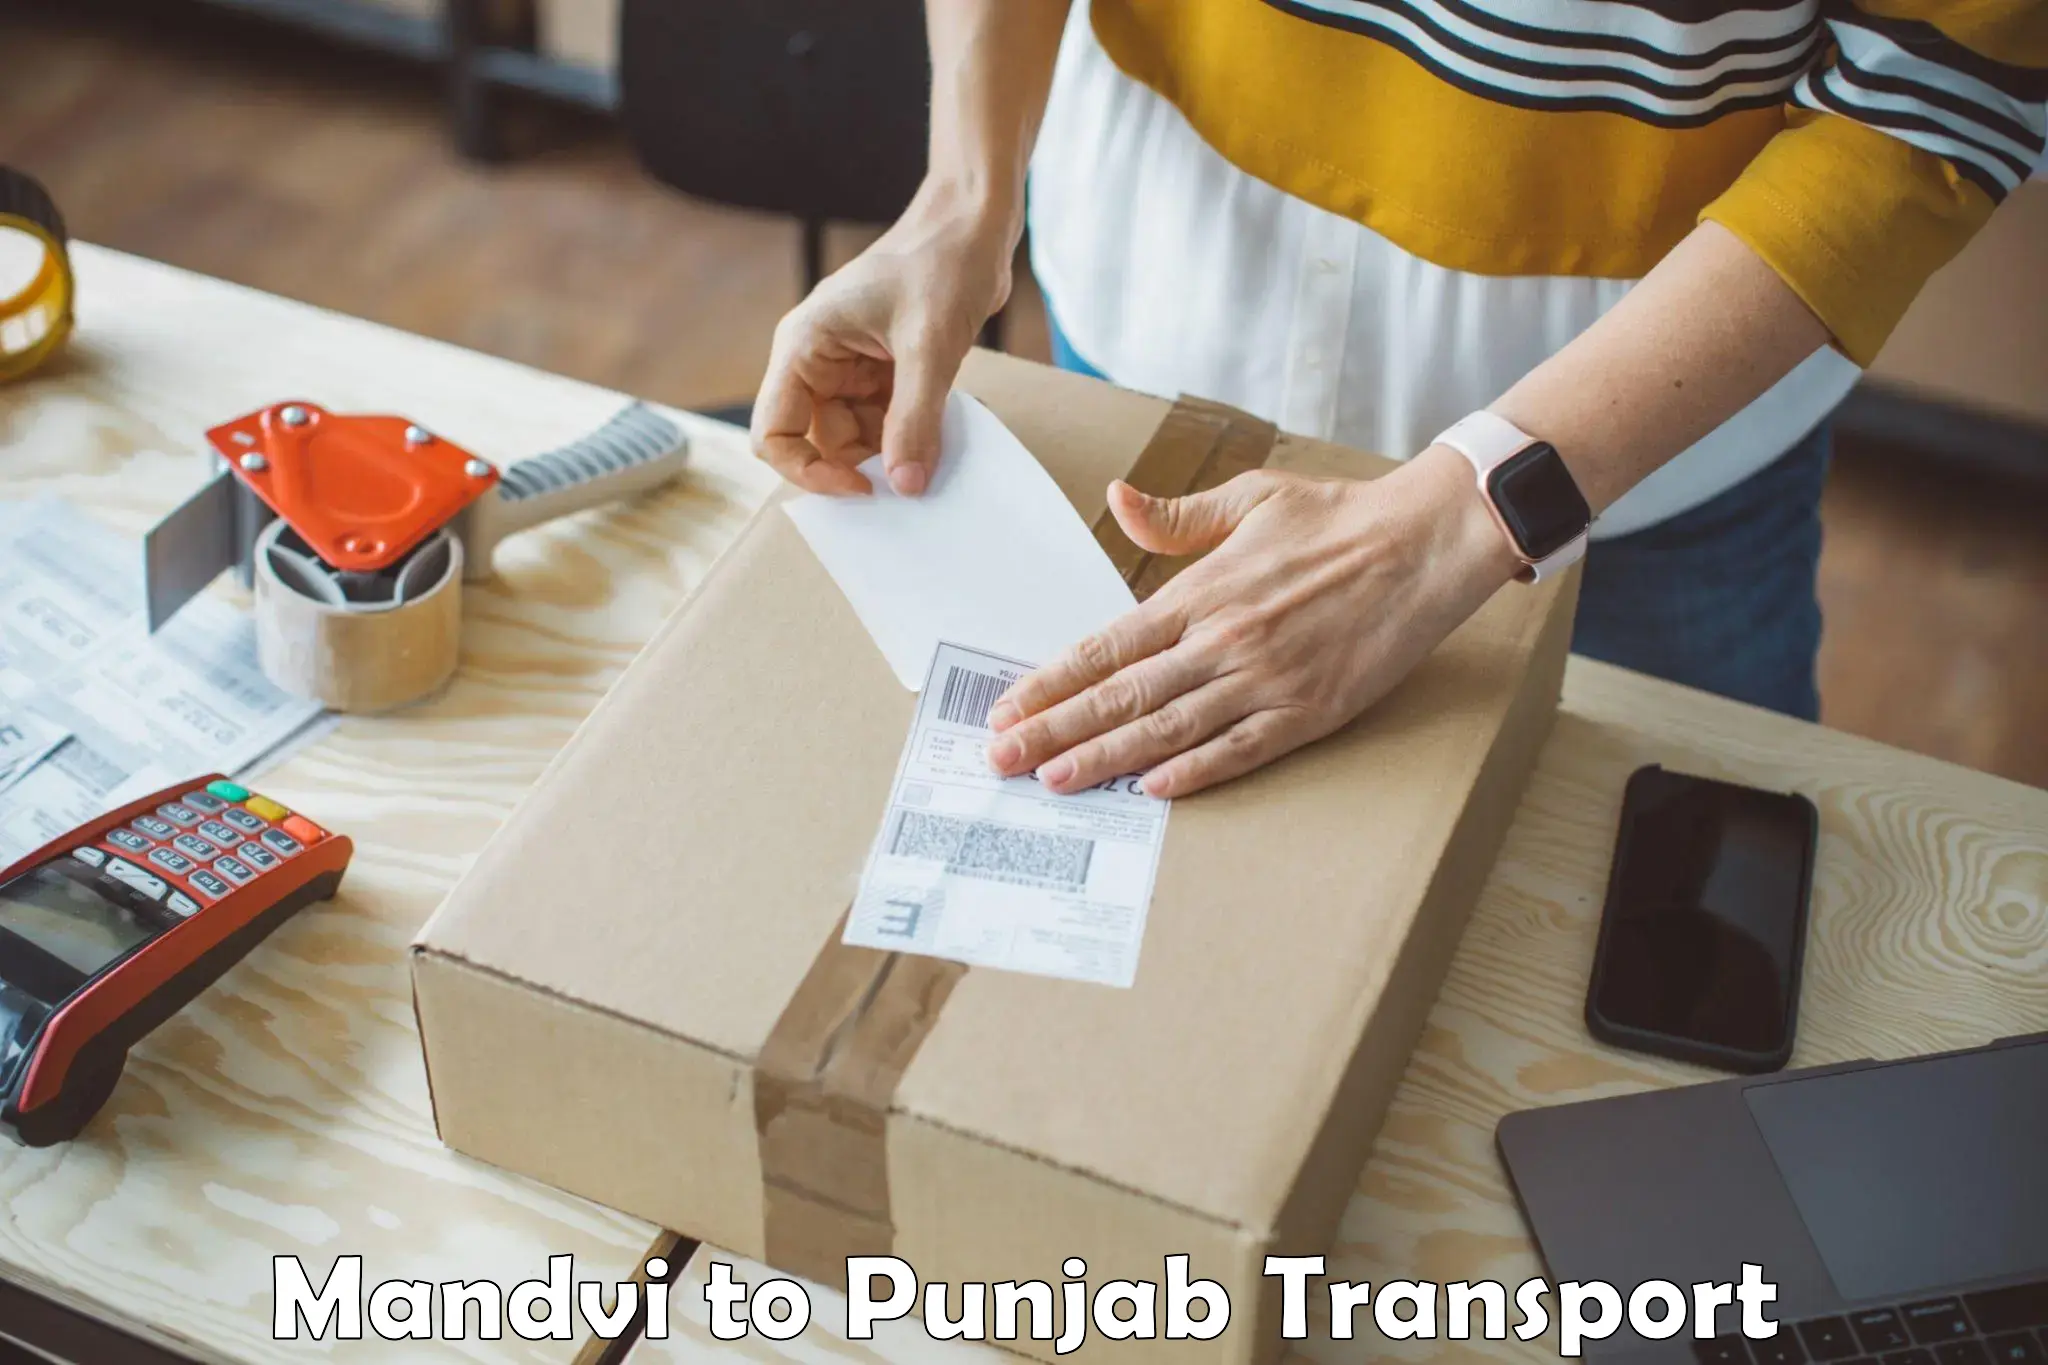 Furniture transport service Mandvi to Punjab